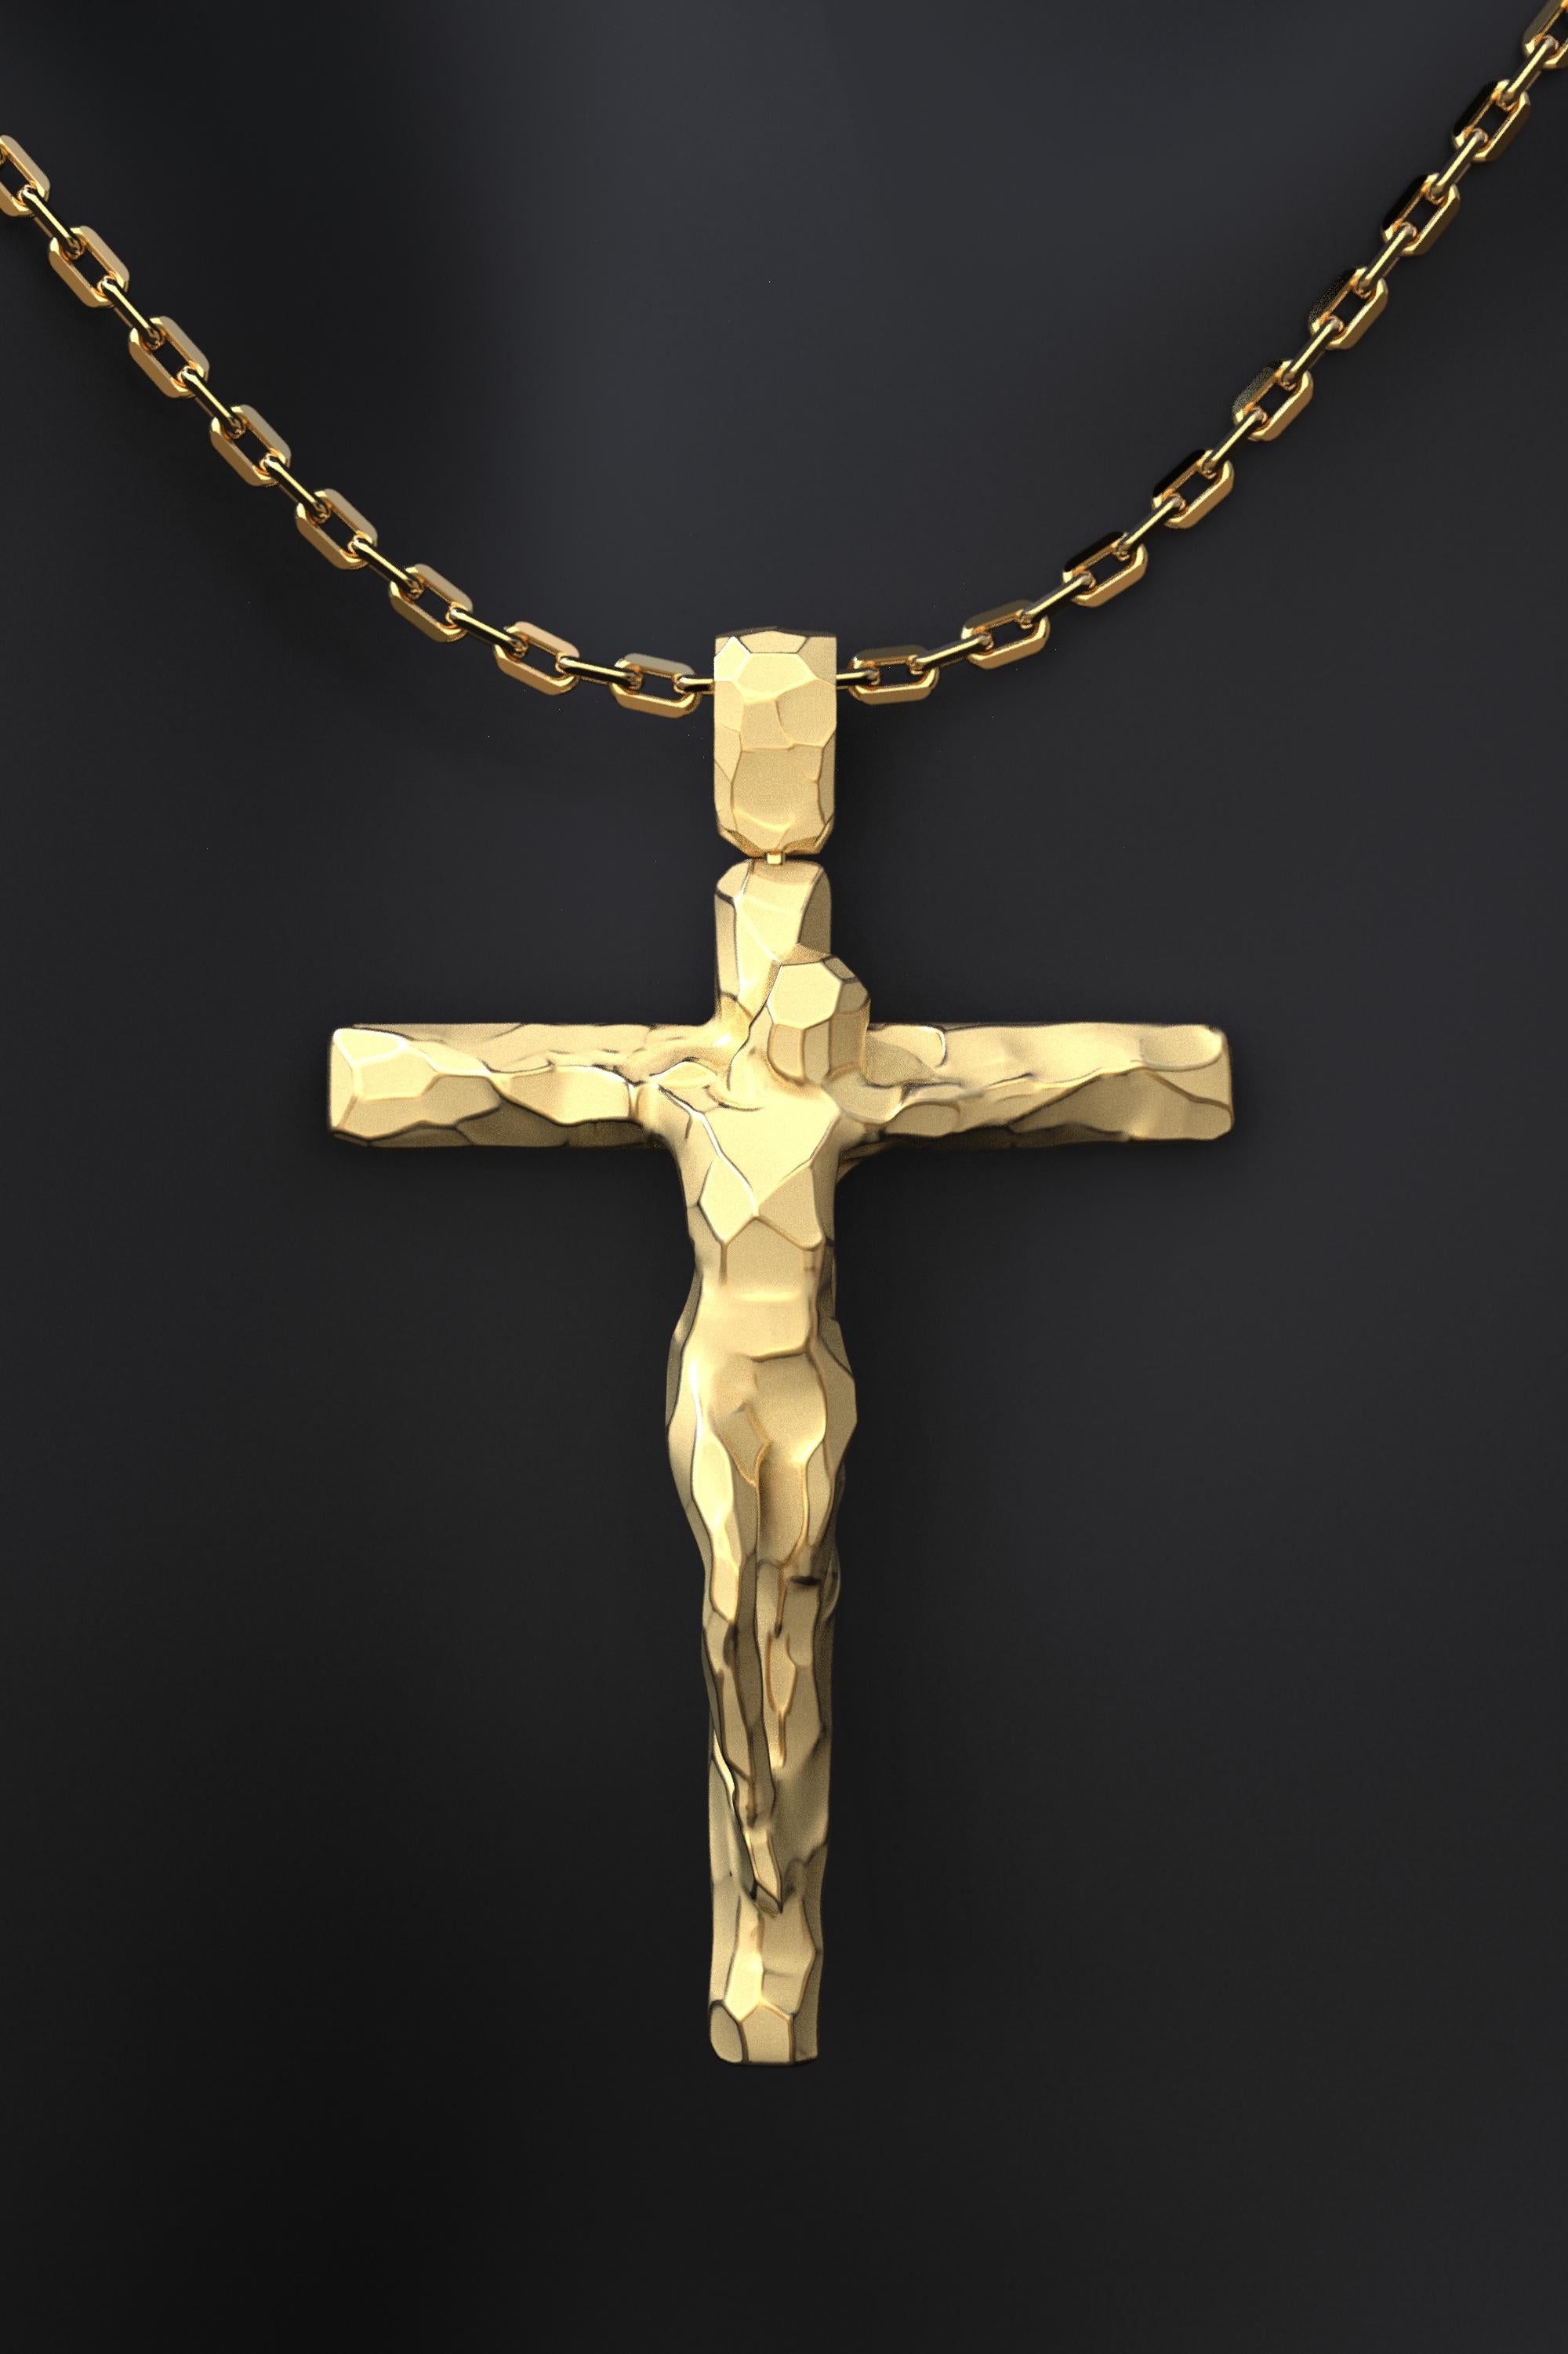 Ce collier crucifix moderne fabriqué sur commande est une façon belle et élégante d'exprimer votre foi. Le crucifix est en or massif 14 carats et présente un design stylisé avec une surface facettée. La croix est suspendue à une solide chaîne